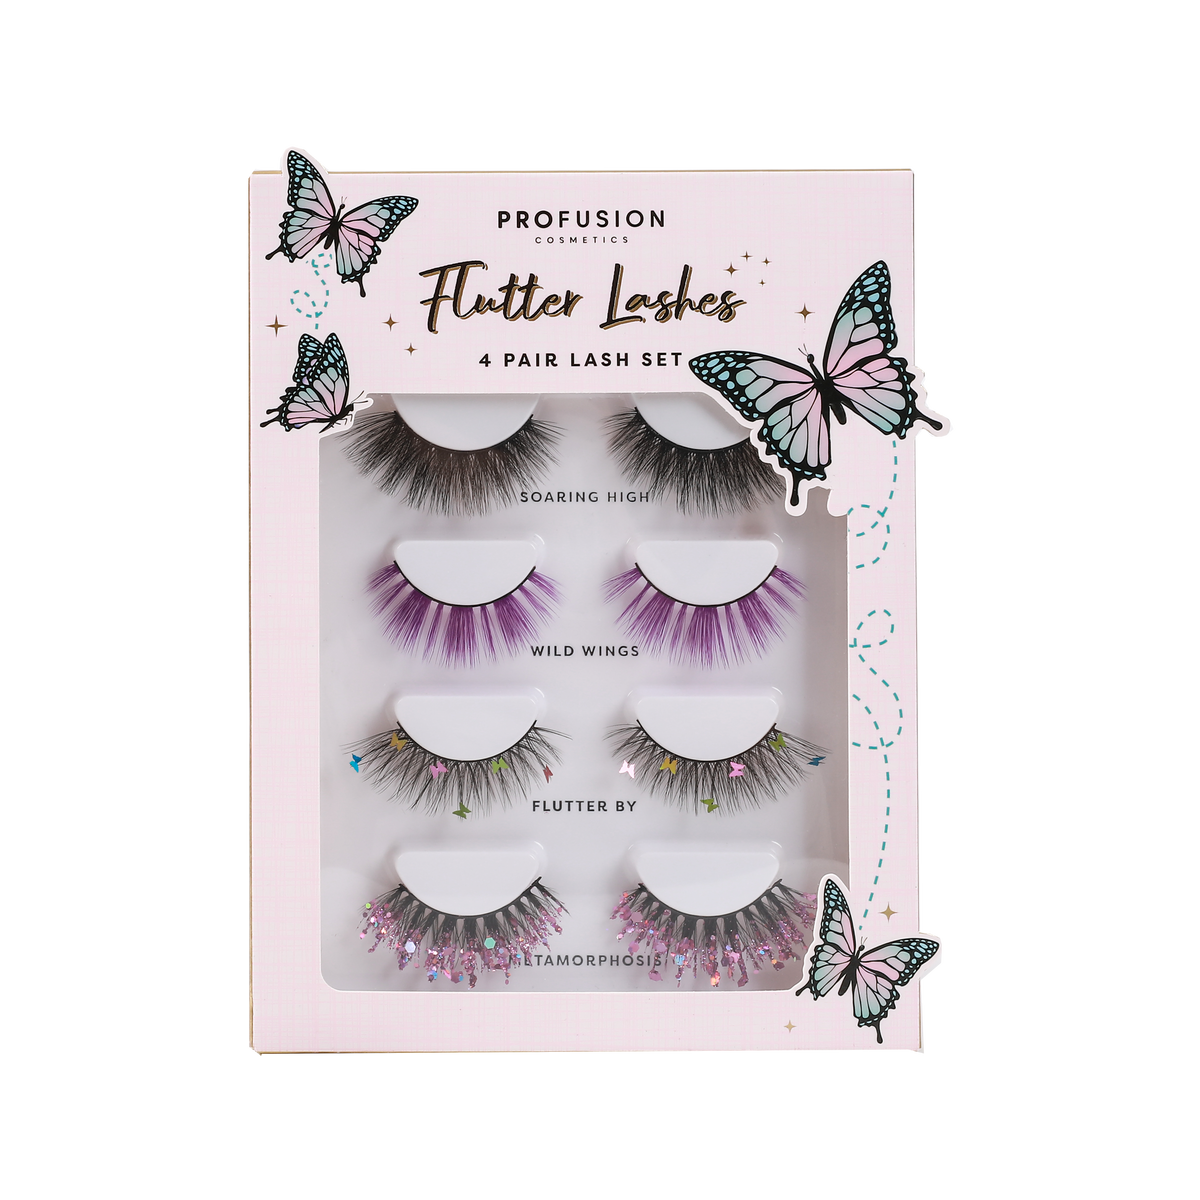 Flutter lashes, 4 pair lash set